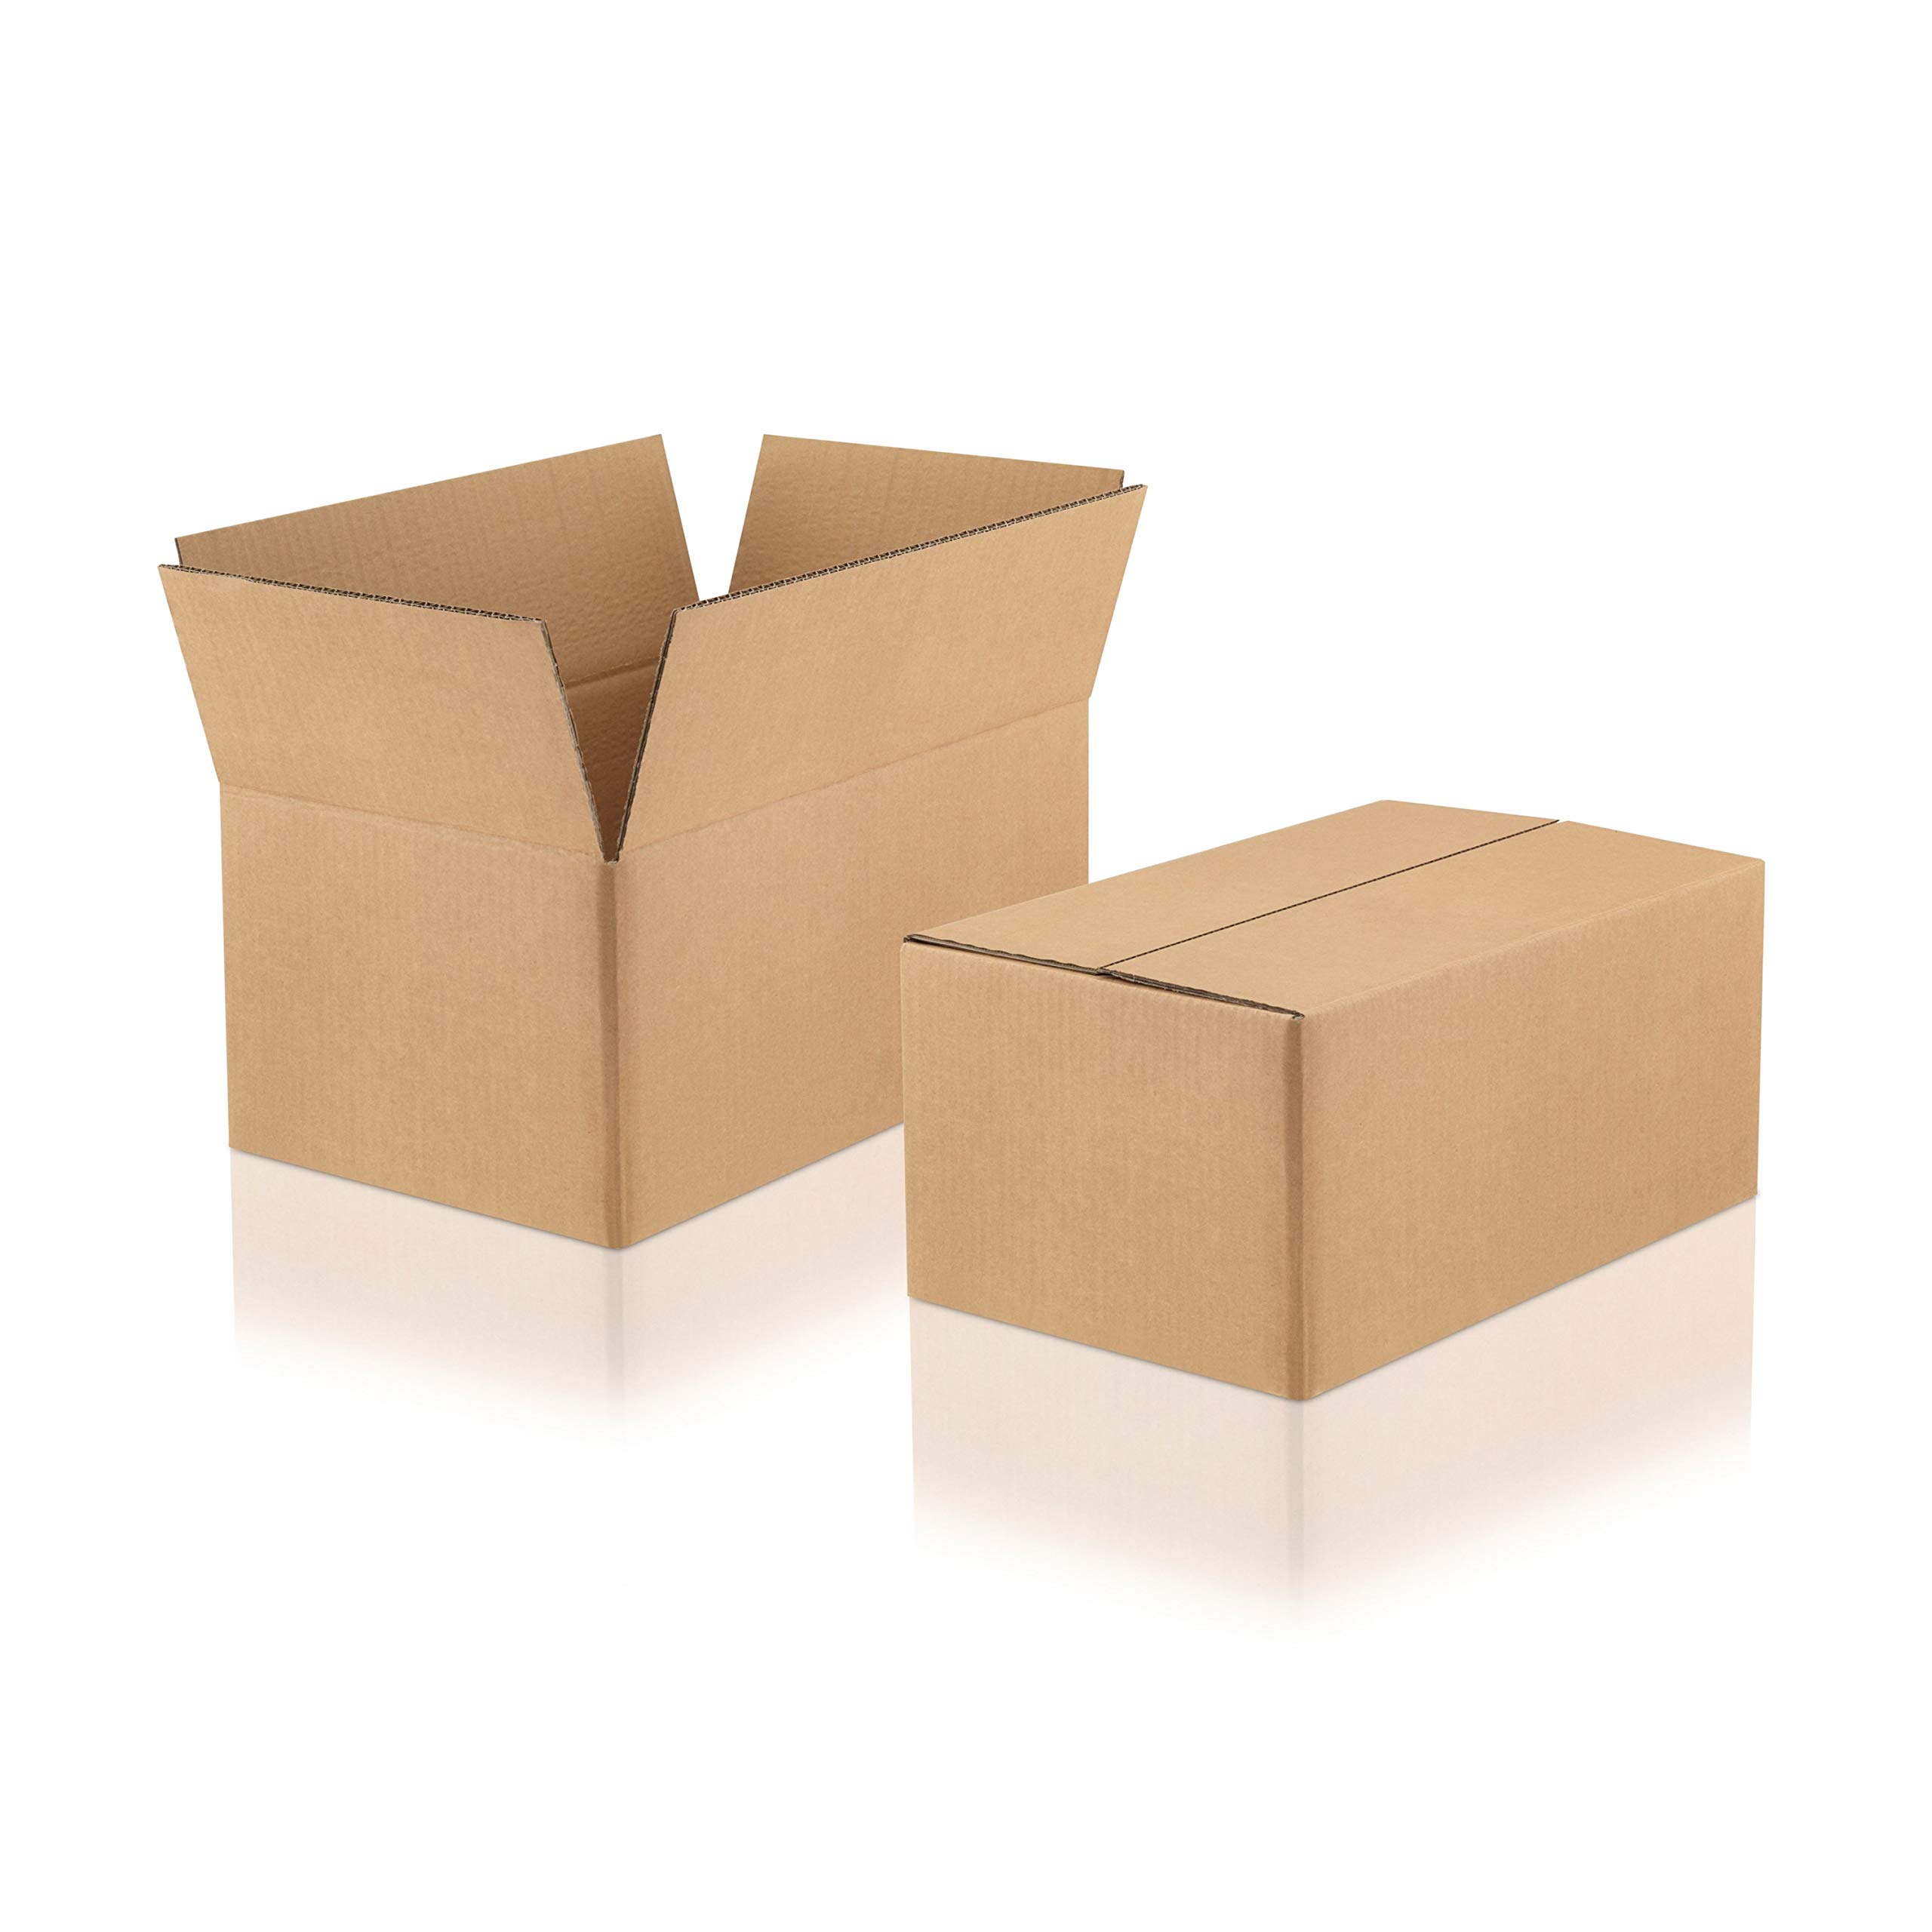 WPTrading - 60 Stück Versandkarton 2-wellig 280 x 180 x 120 mm Wellpappe (Nr. 2W-36) Braun - Pappe Faltkarton für Warenversendung, Paket & Päckchen klein (S) - Karton Versandverpackung extra stabil